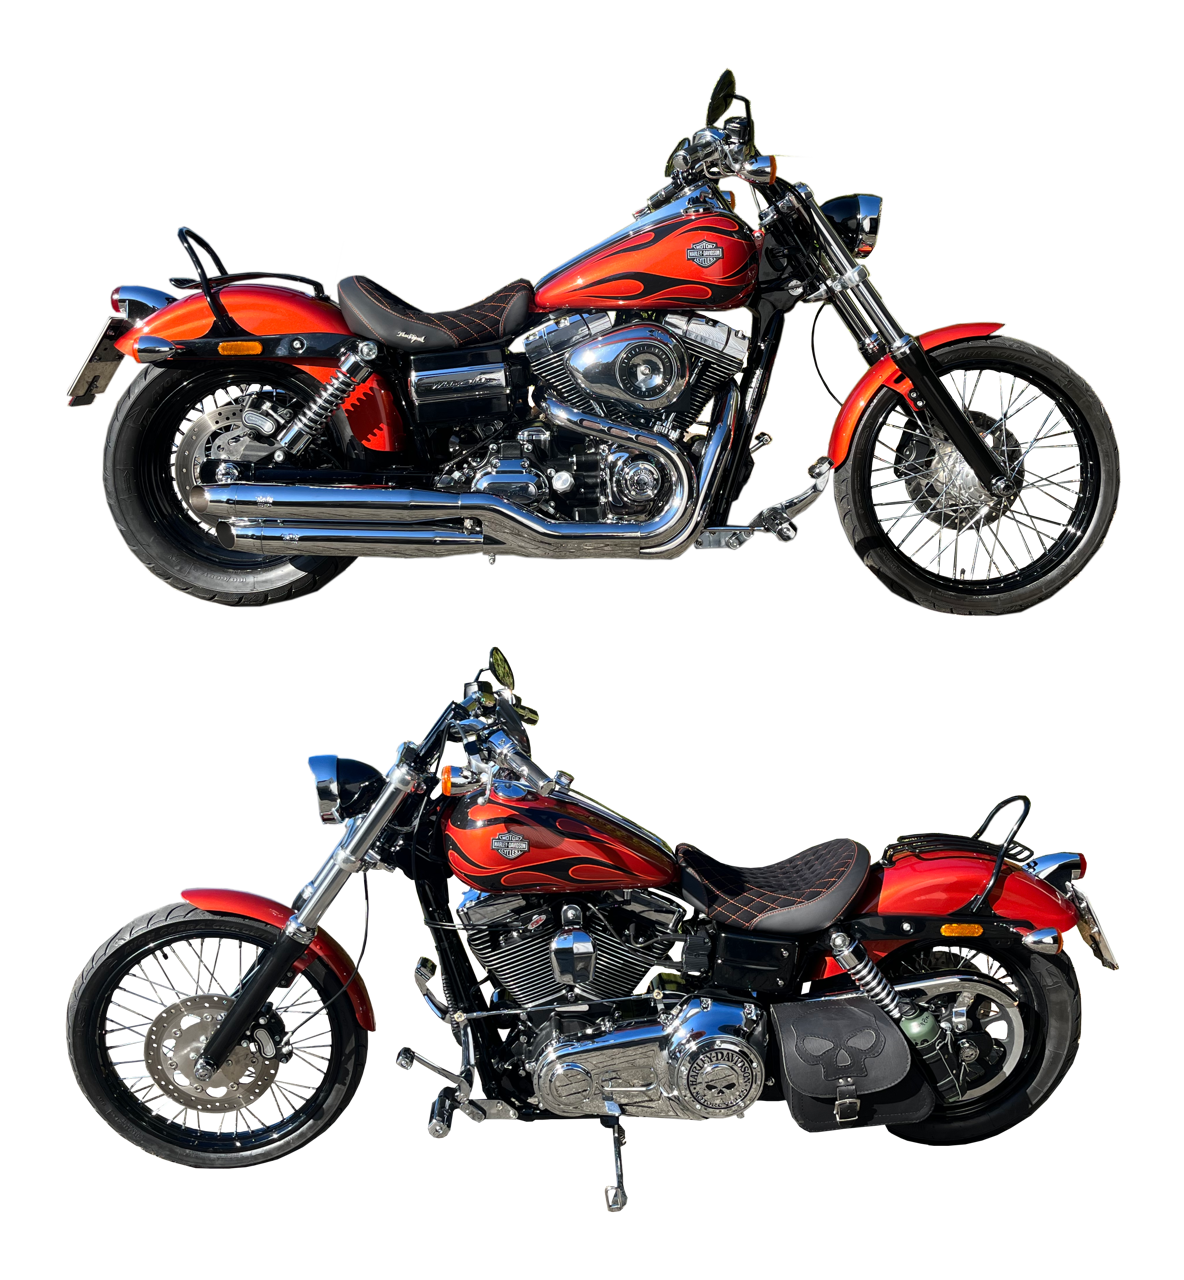 Zündschloss mit Startfunktion für Harley-Davidson Motorräder und